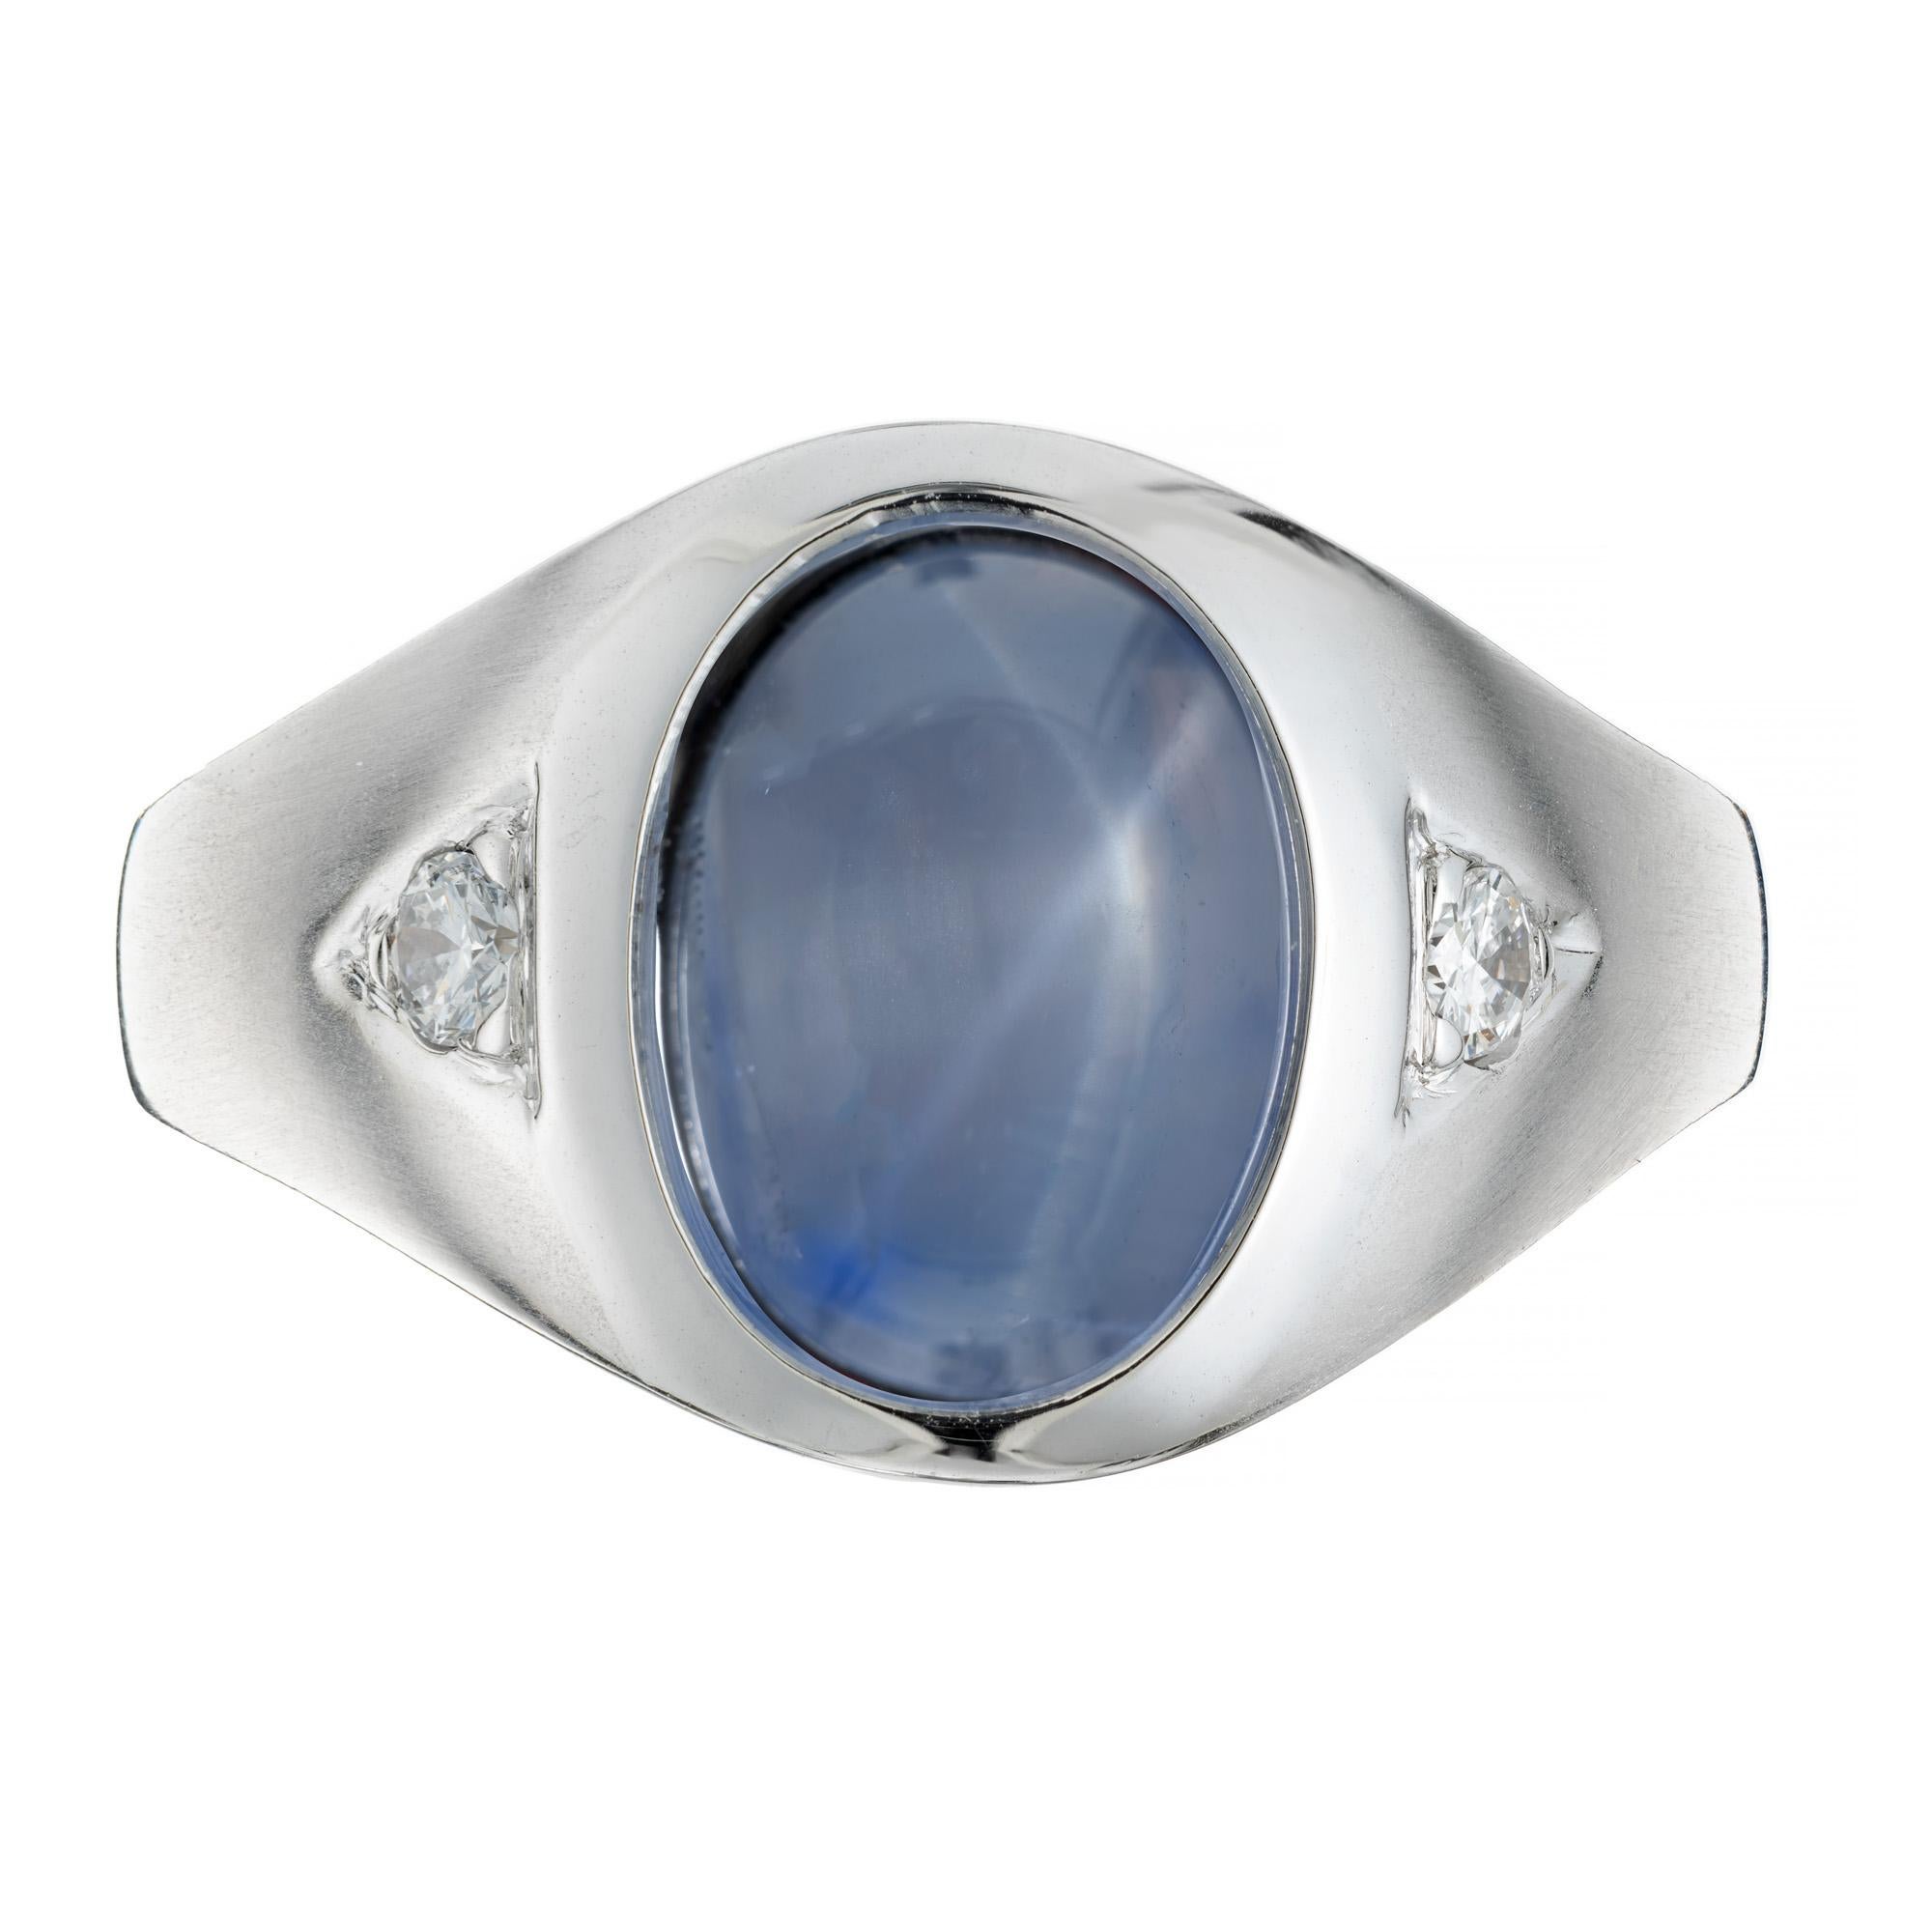 Herrenring mit Saphir und Diamant aus den 1940er Jahren. Dieser GIA-zertifizierte, natürliche, nicht erhitzte, wunderschöne ovale Cabochon-Sternsaphir hat eine beeindruckende Größe von 11,11cts. mit einer reichen blauen und grauen Farbzonierung.